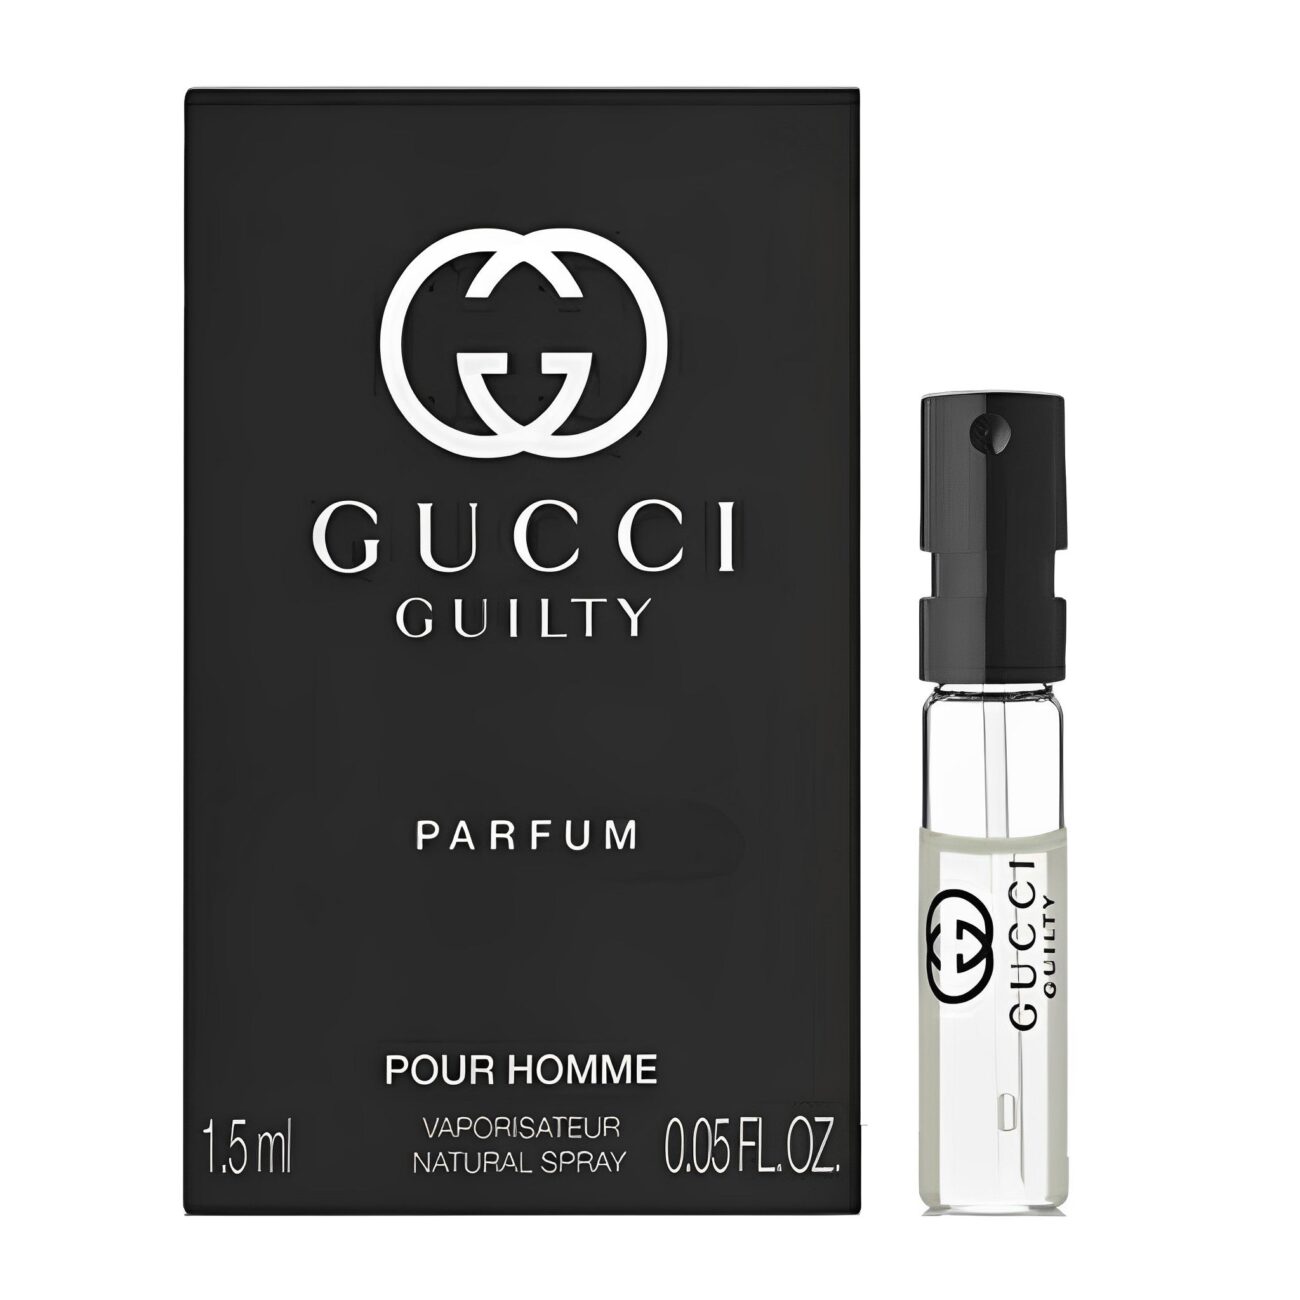 Guilty Pour Homme Parfum-Gucci